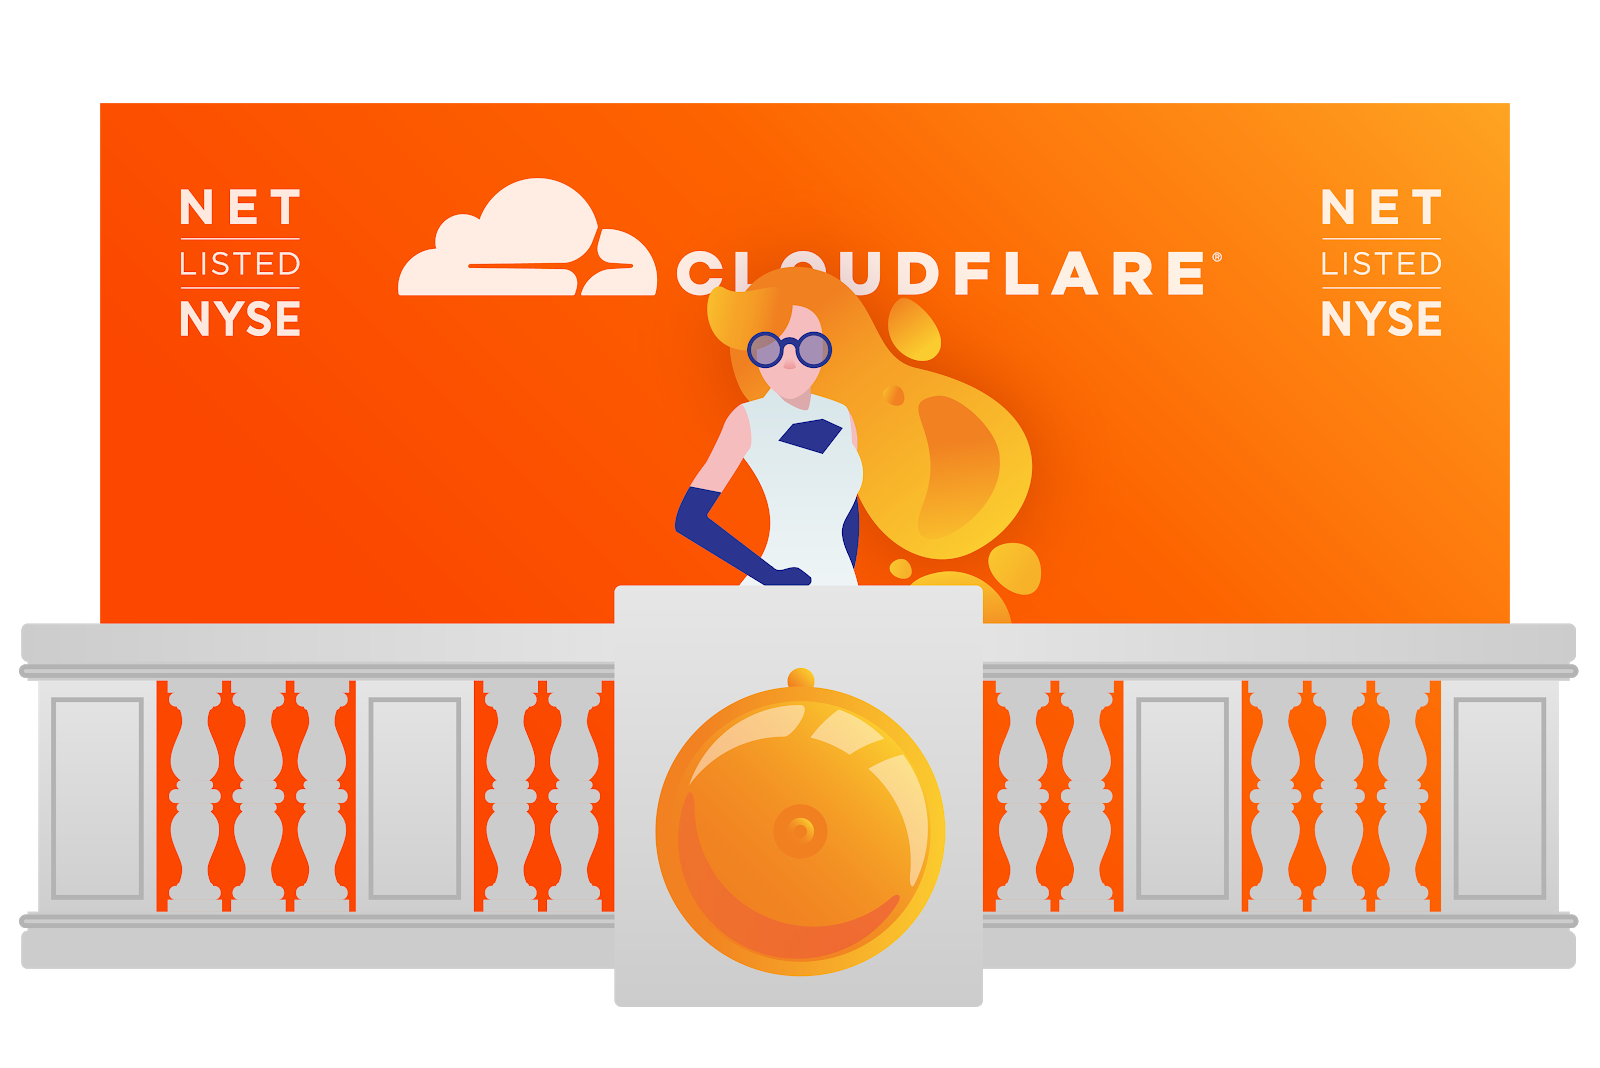 Cloudflareとウォール街が今日のインターネット暗号化にどう寄与しているか